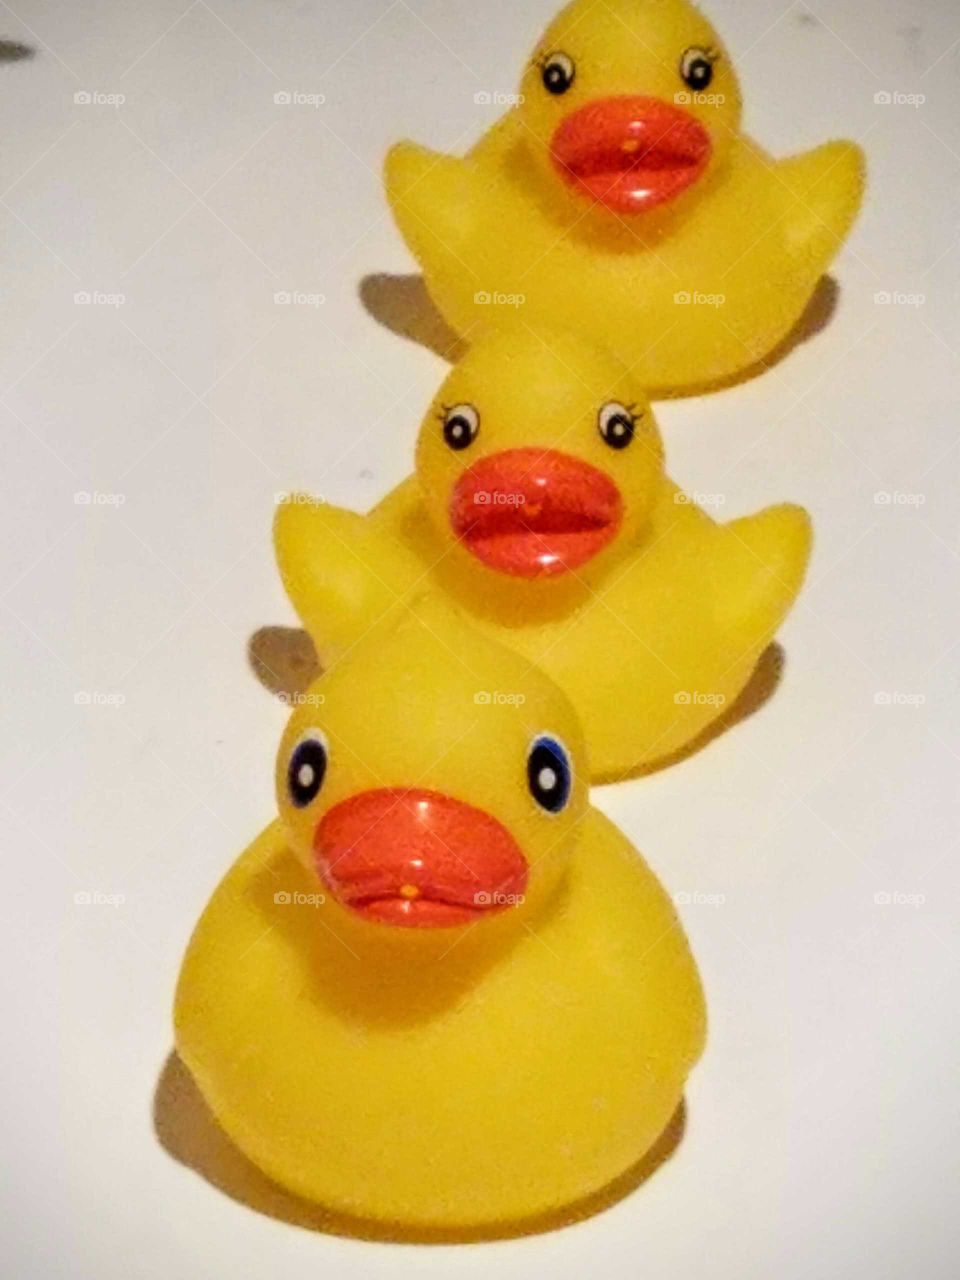 Little duckies